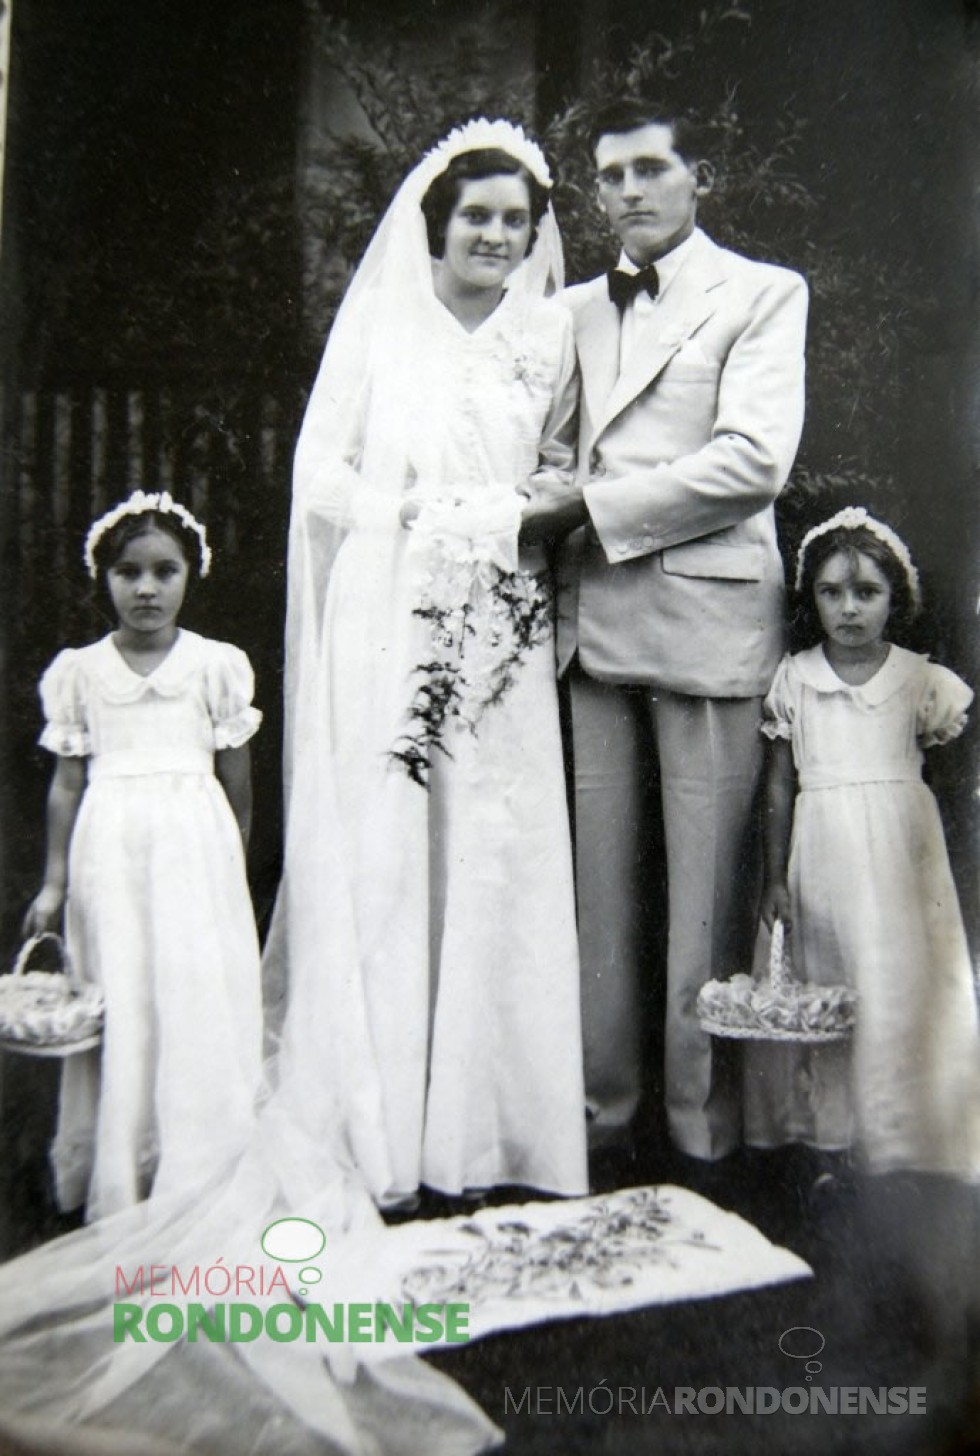 || Noivos Edith Anna Schmitz  e Edvino von Borstel,  pioneiros de Marechal Cândido Rondon, no dia de casamento em janeiro de 1946, na cidade Piratuba (SC).
Imagem: Acervo Edith von Borstel - FOTO 1 - 